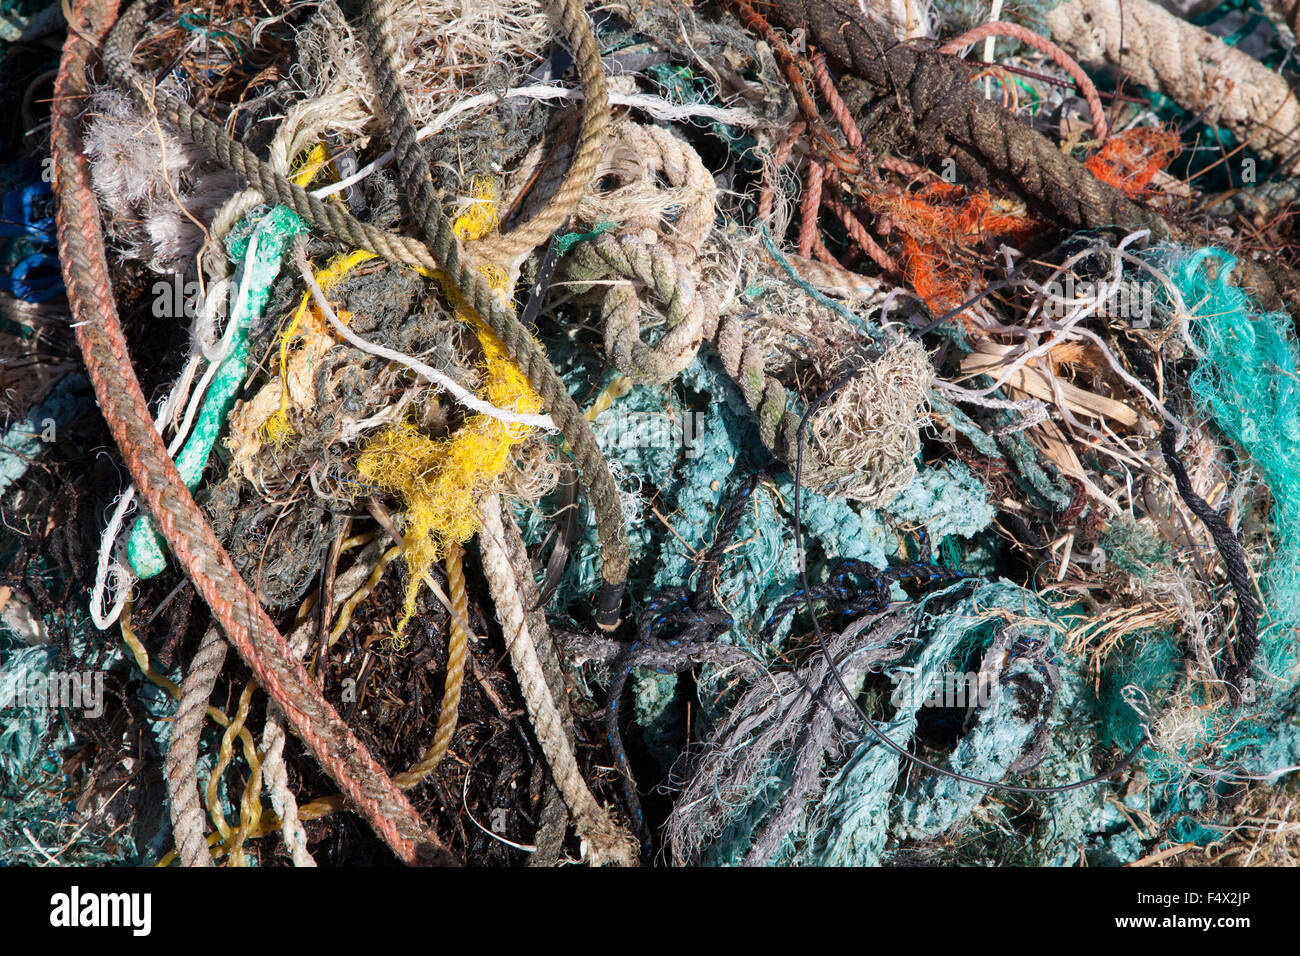 Cordes et filets recueillis le long de la côte d'une île du Pacifique Nord par les touristes pour l'élimination appropriée pour éviter de nuire à la faune marine Banque D'Images